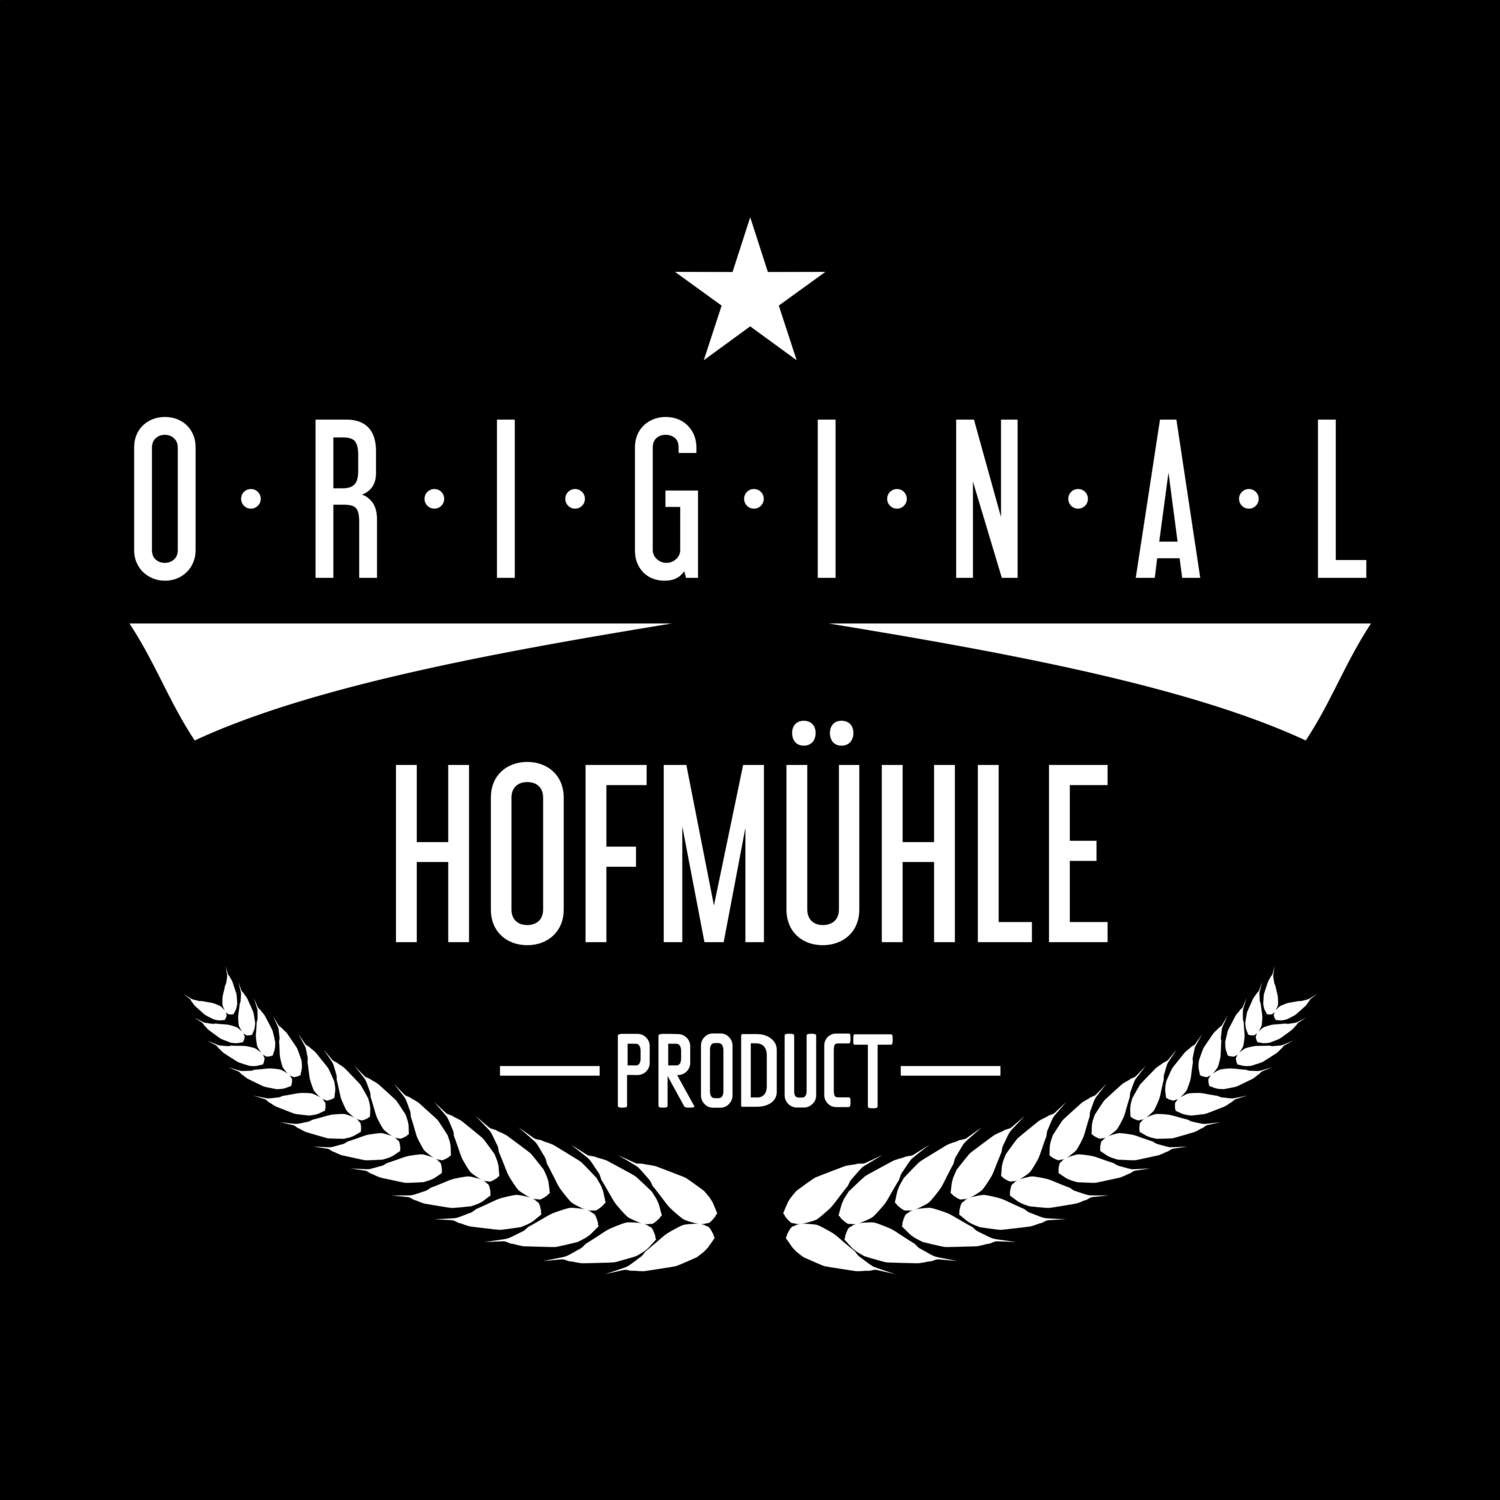 Hofmühle T-Shirt »Original Product«